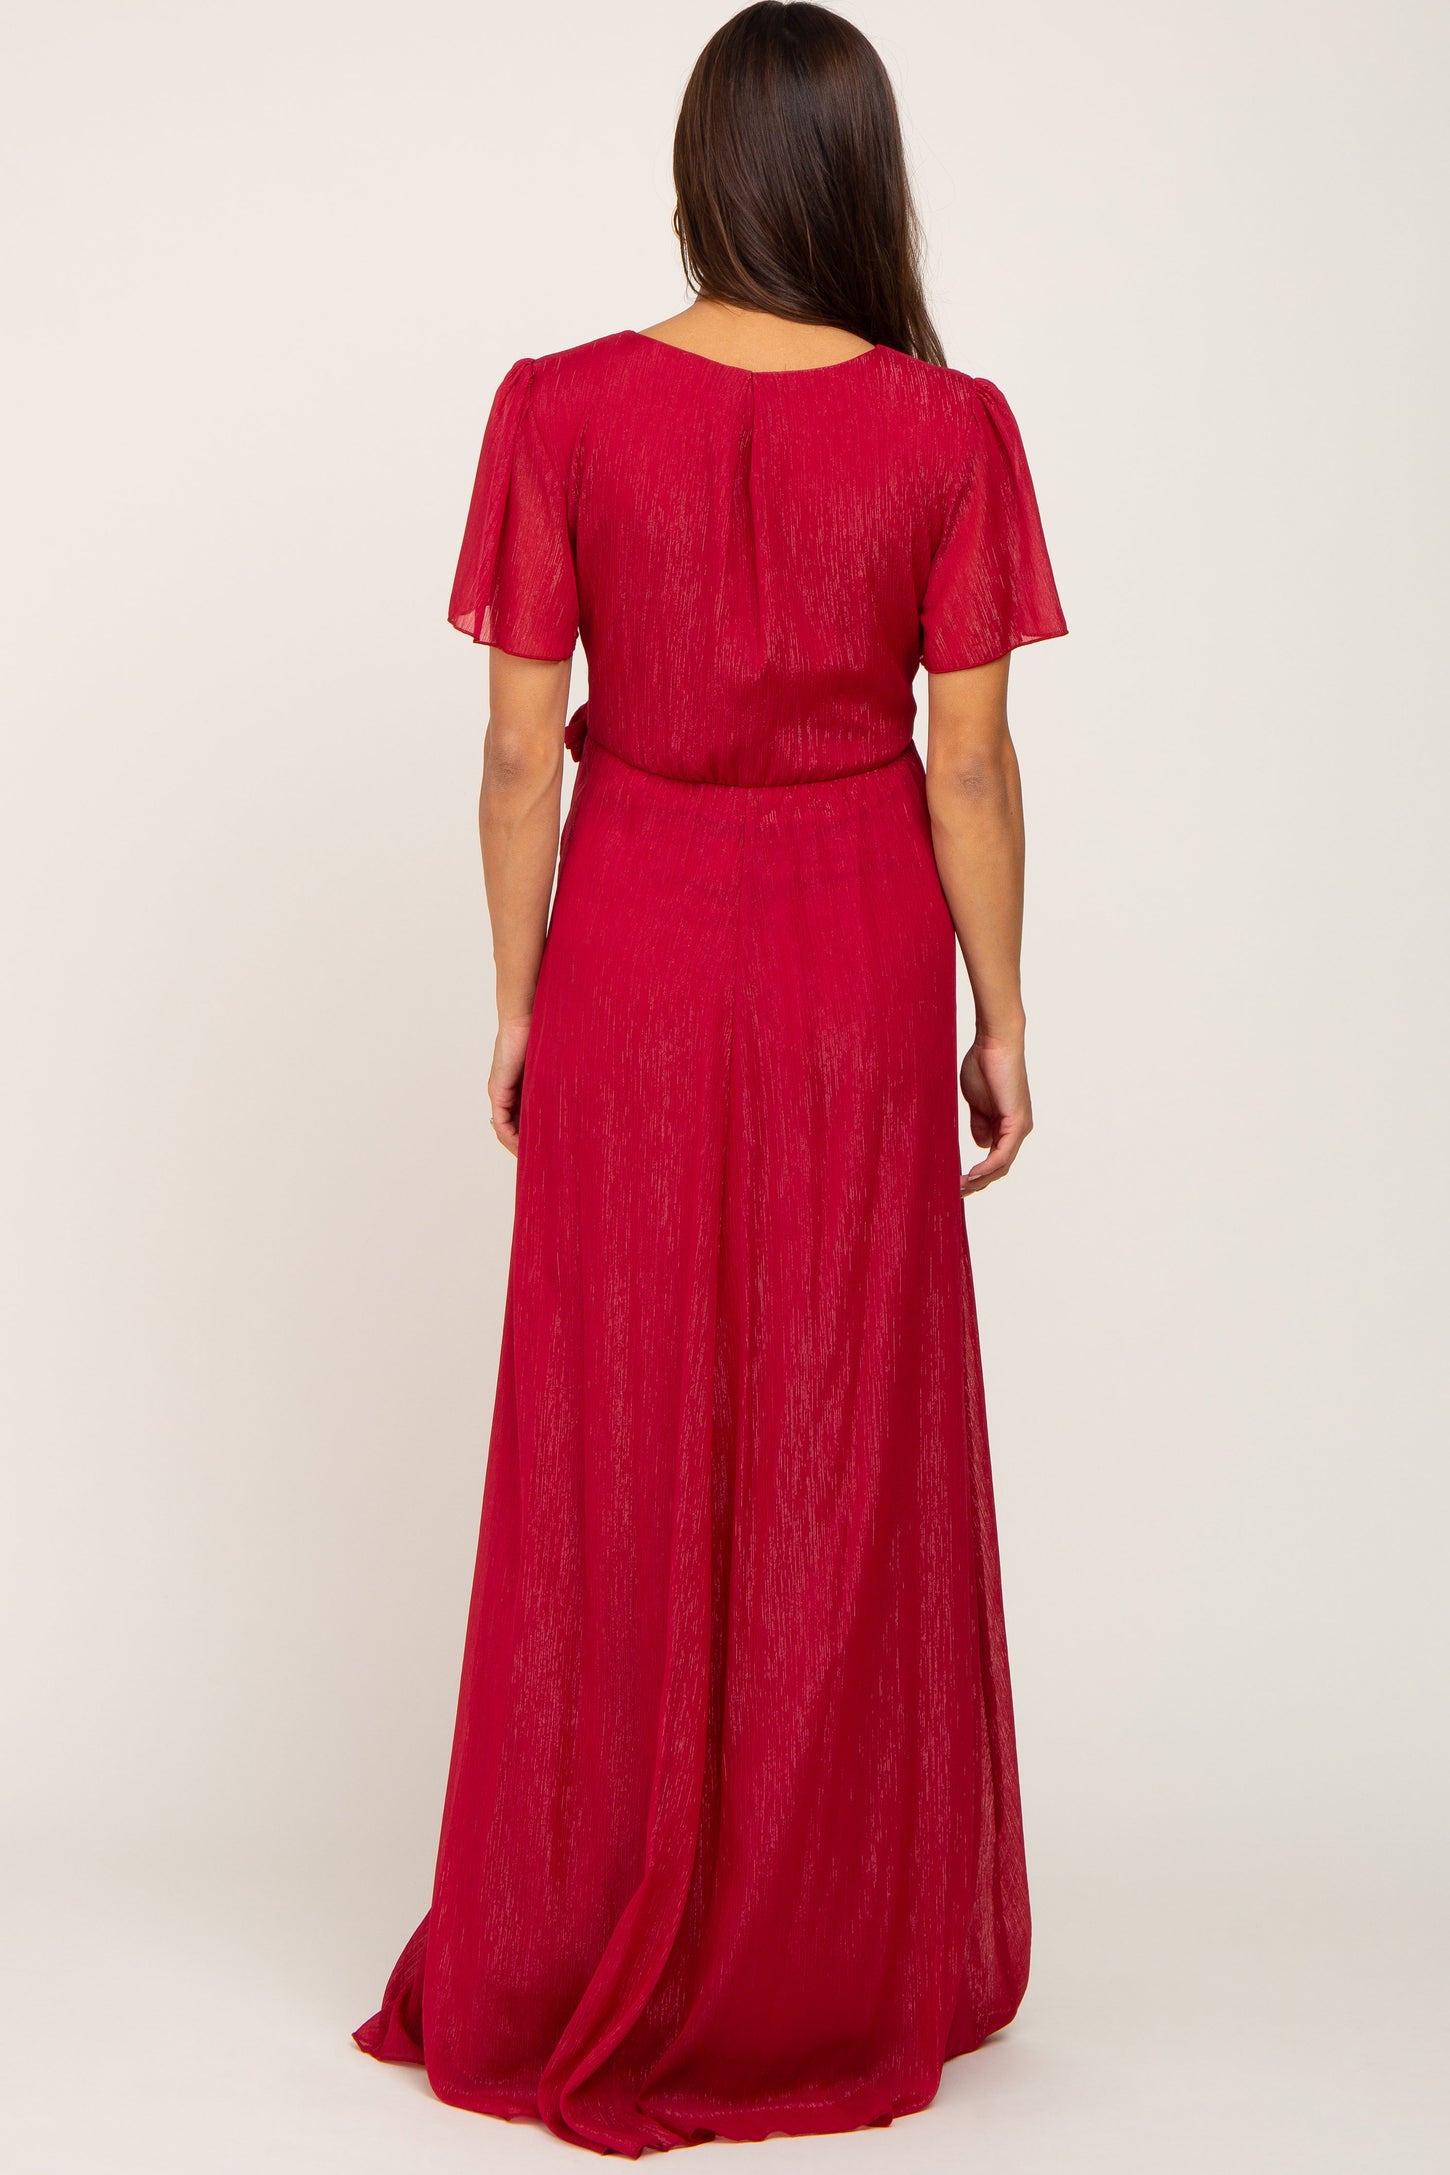 Red Metallic Shimmer Chiffon Maternity Maxi Dress– PinkBlush